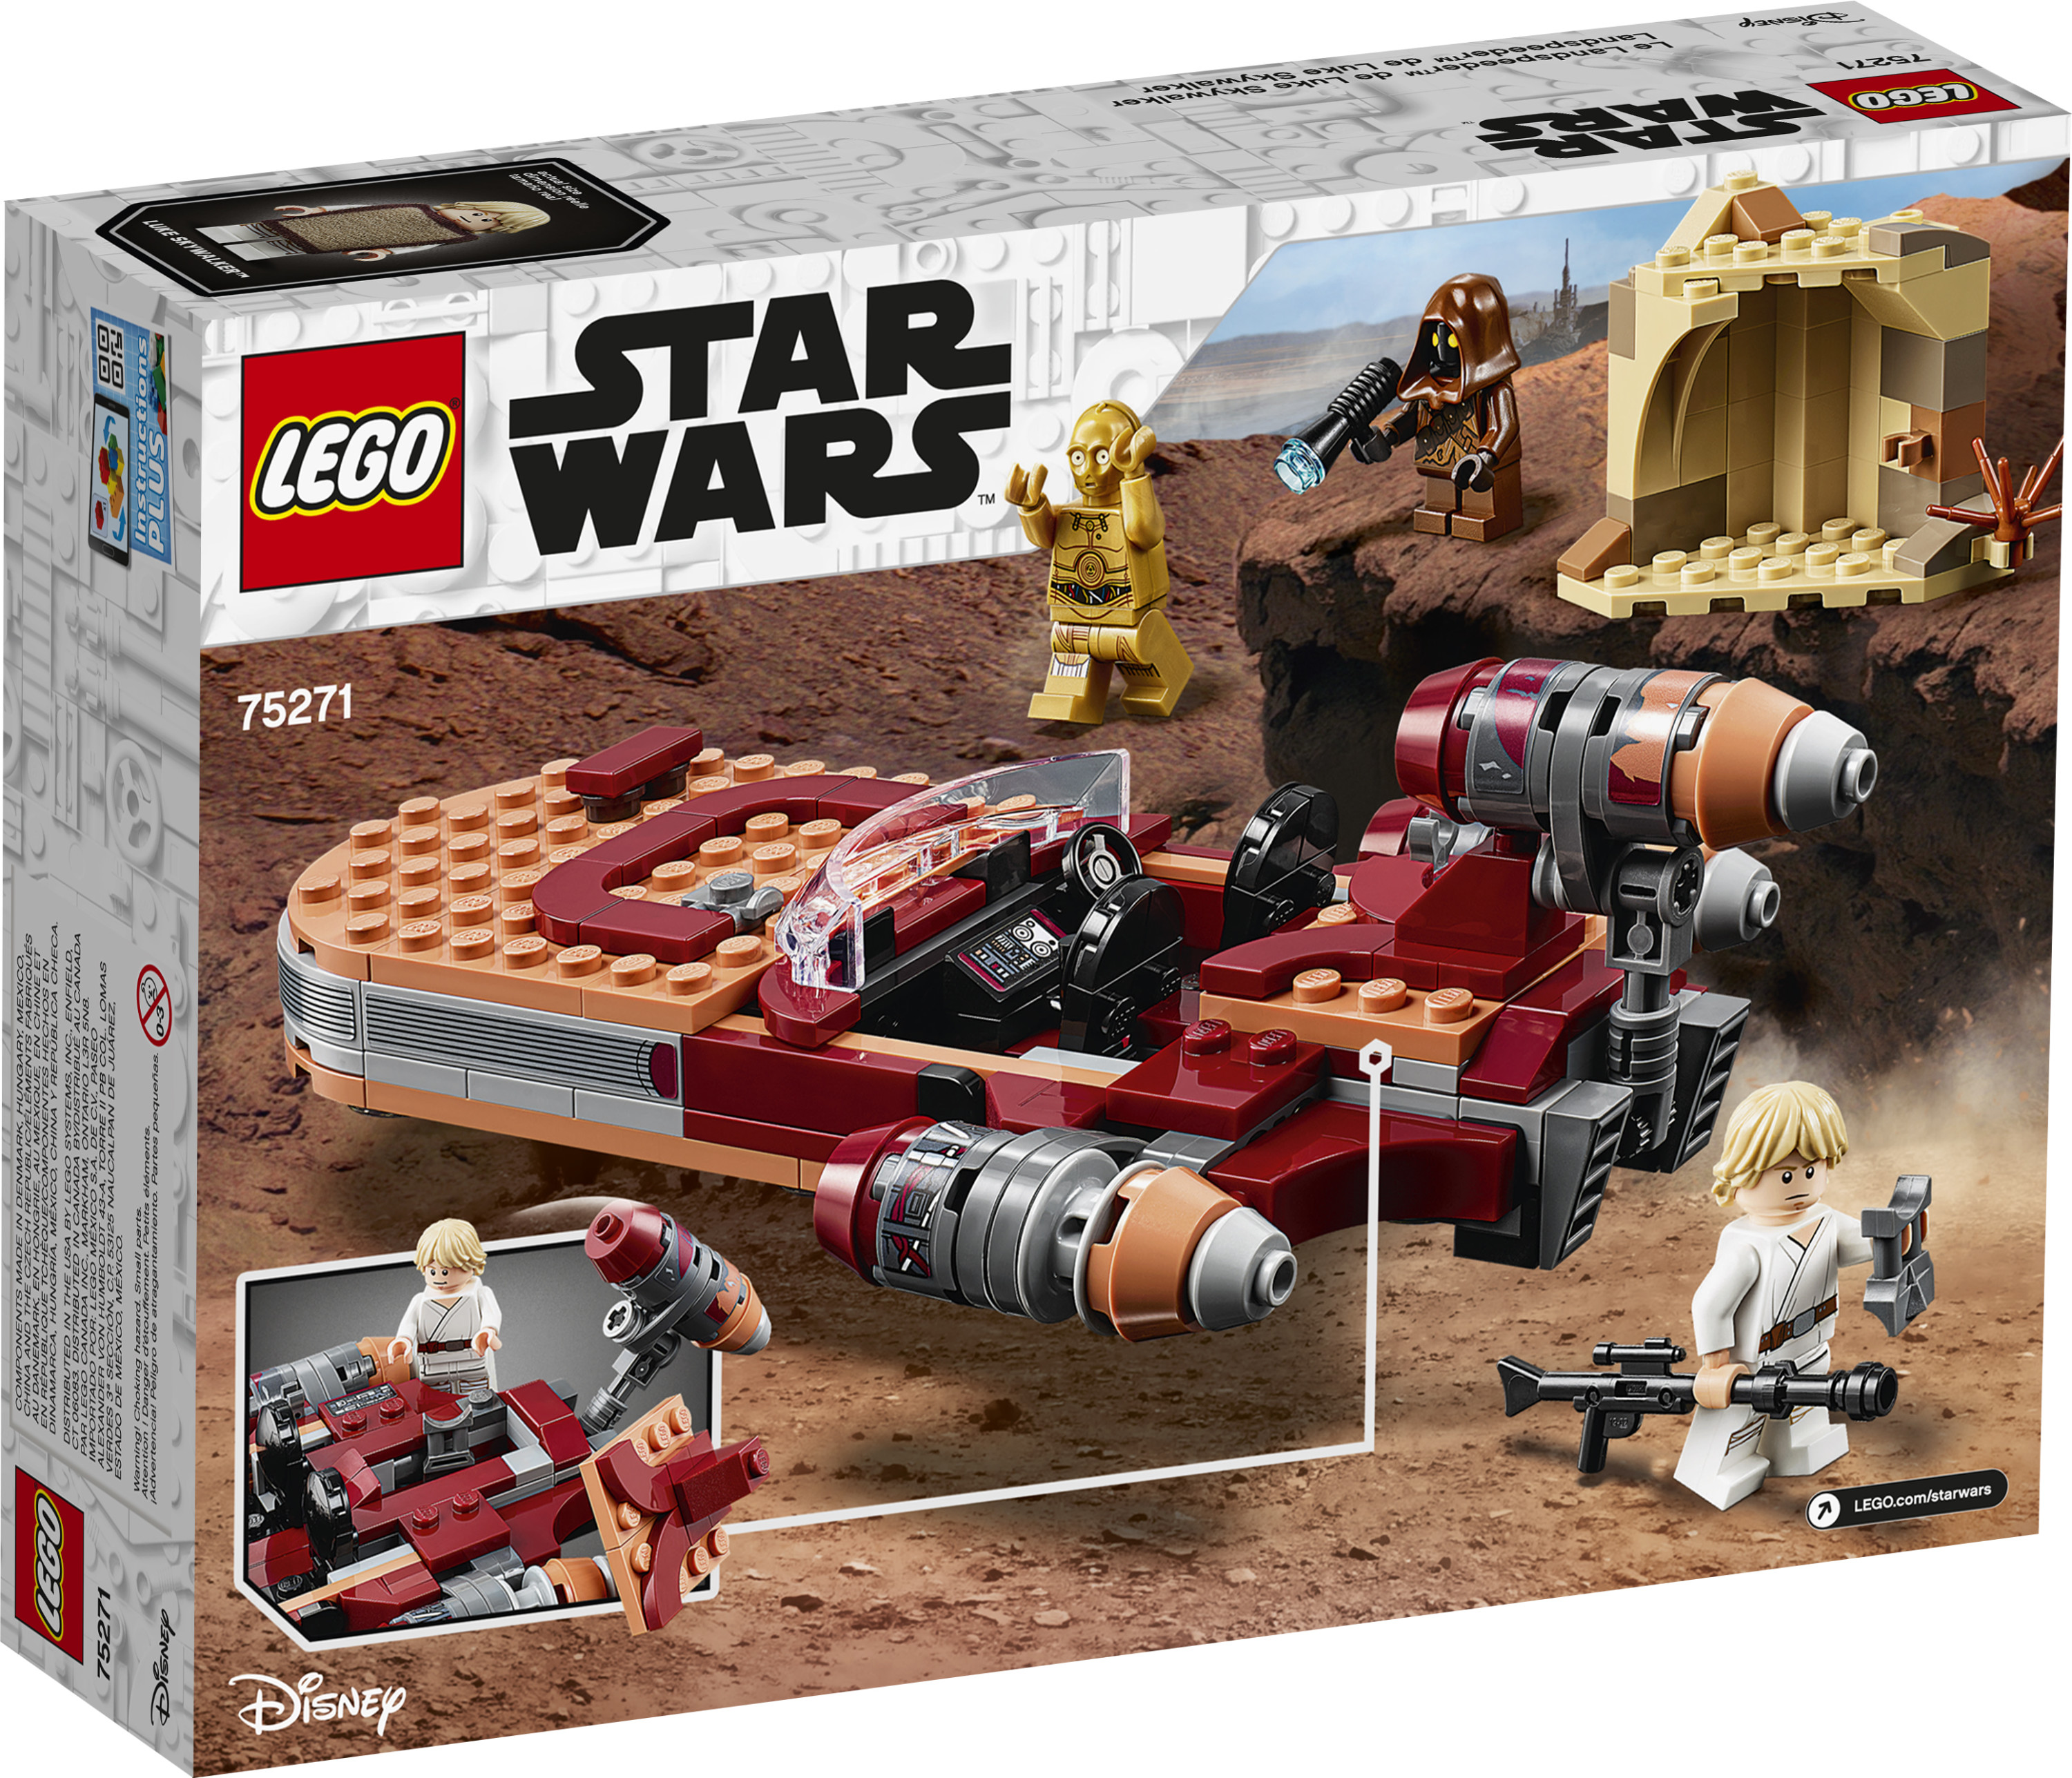 LEGO Star Wars: A New Hope Luke Skywalker’s Landspeeder 75271 Building Kit, Collectible Set (236 Pieces) - image 5 of 5